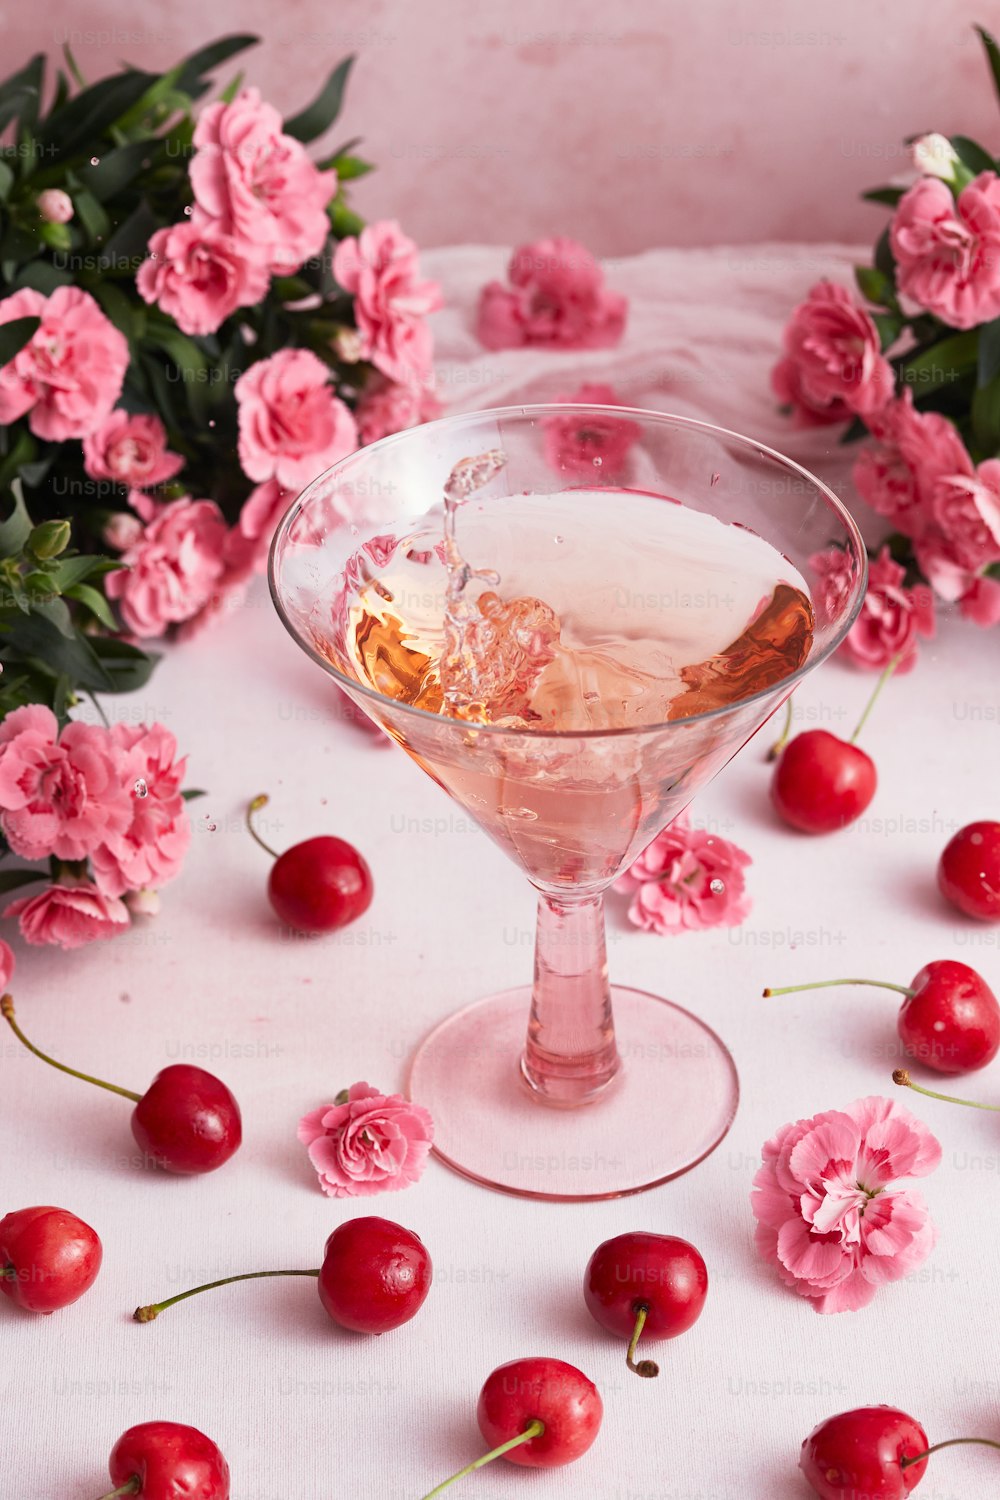 Un vaso lleno de un líquido rodeado de flores y cerezas